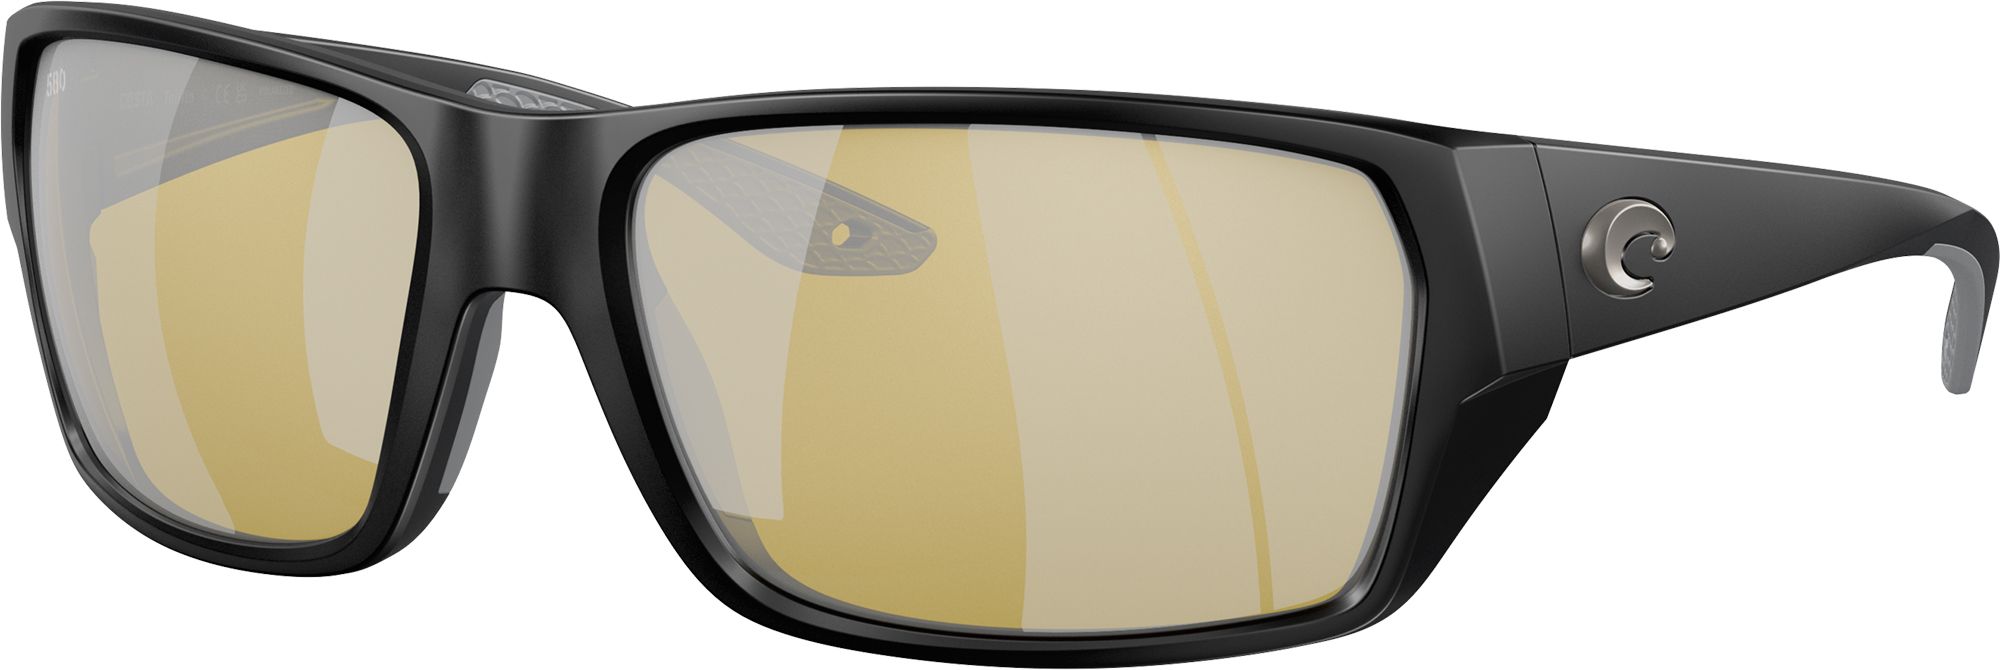 Costa Del Mar Tailfin 580G Sunglasses